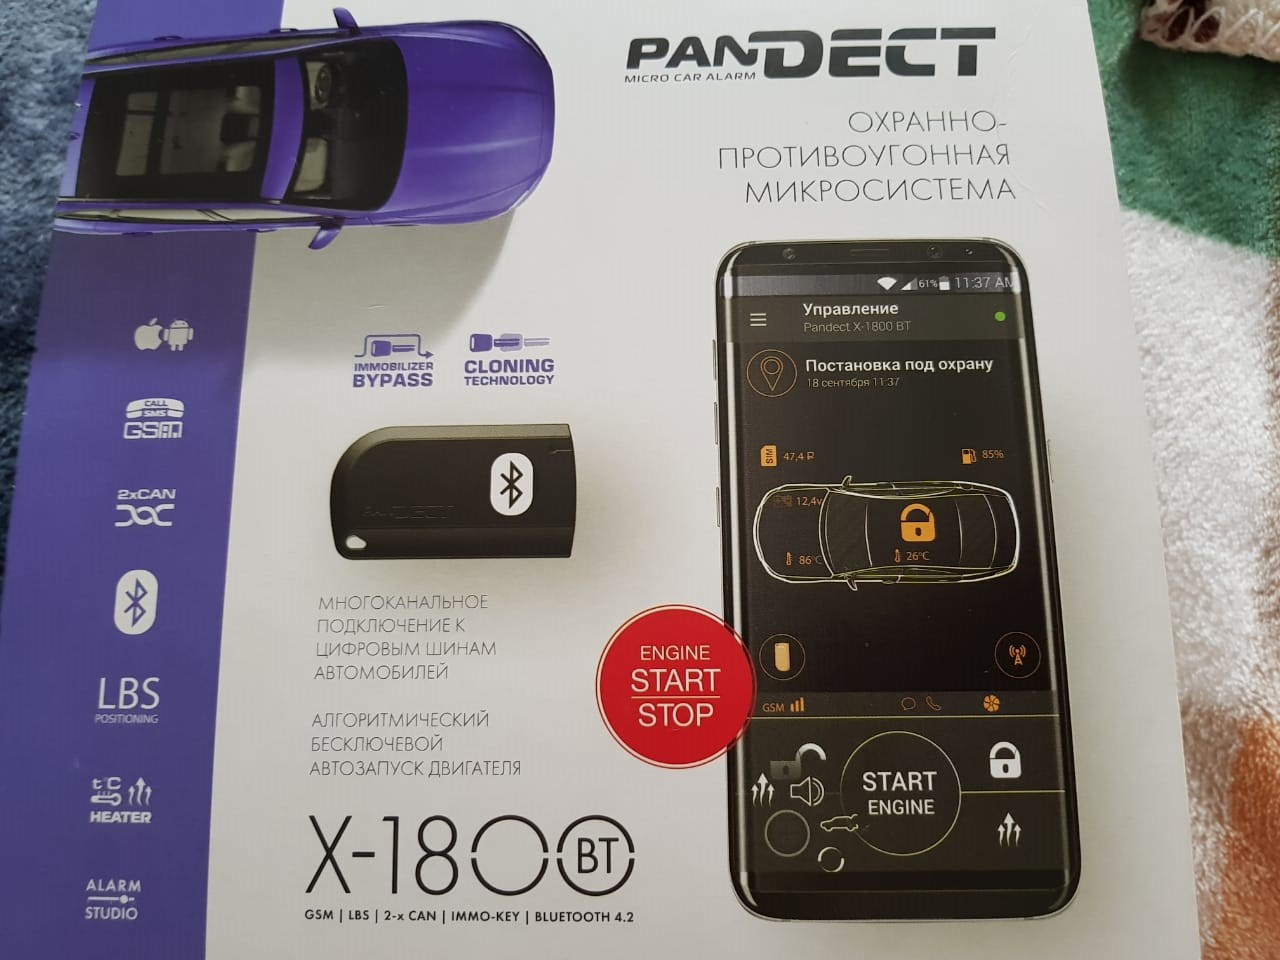 Pandect 1800. Pandora x1800bt. Pandora x-1800bt l. Pandect x-1800 BT. Pandora 1800 GSM GPS.